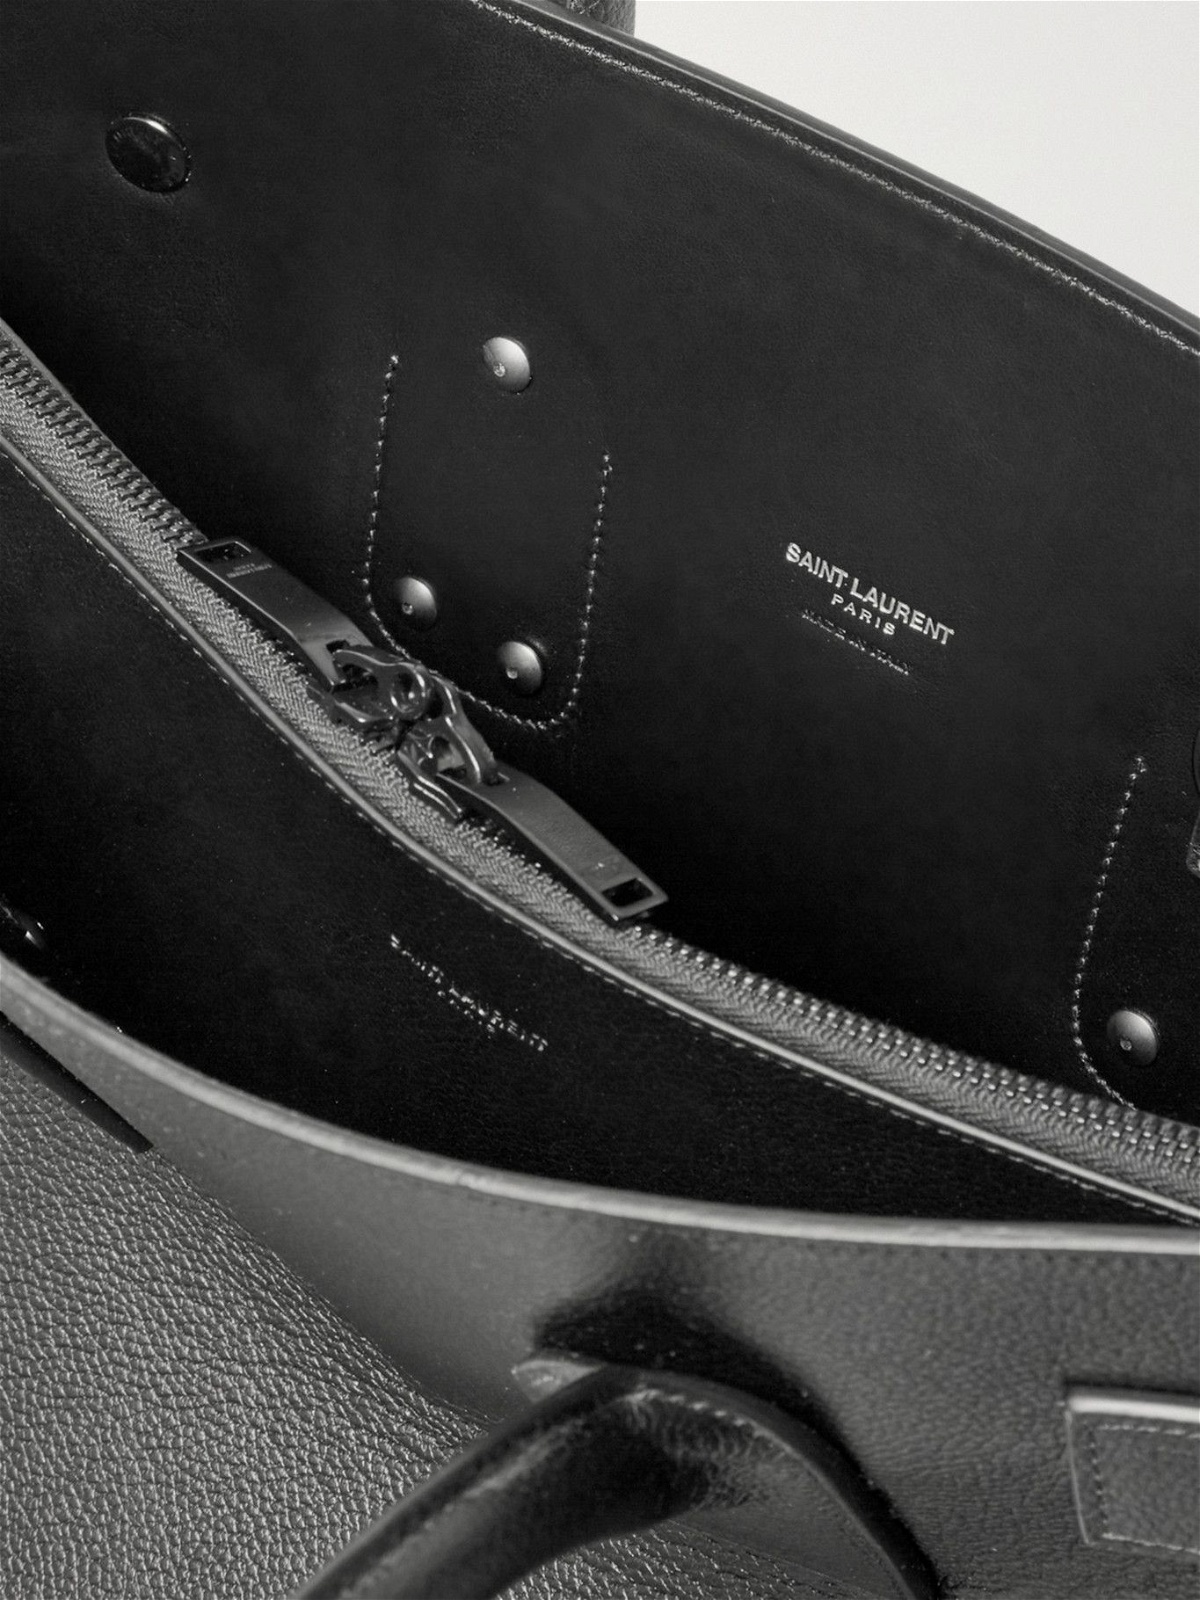 Sac de jour 48h duffle bag in grained leather, Saint Laurent